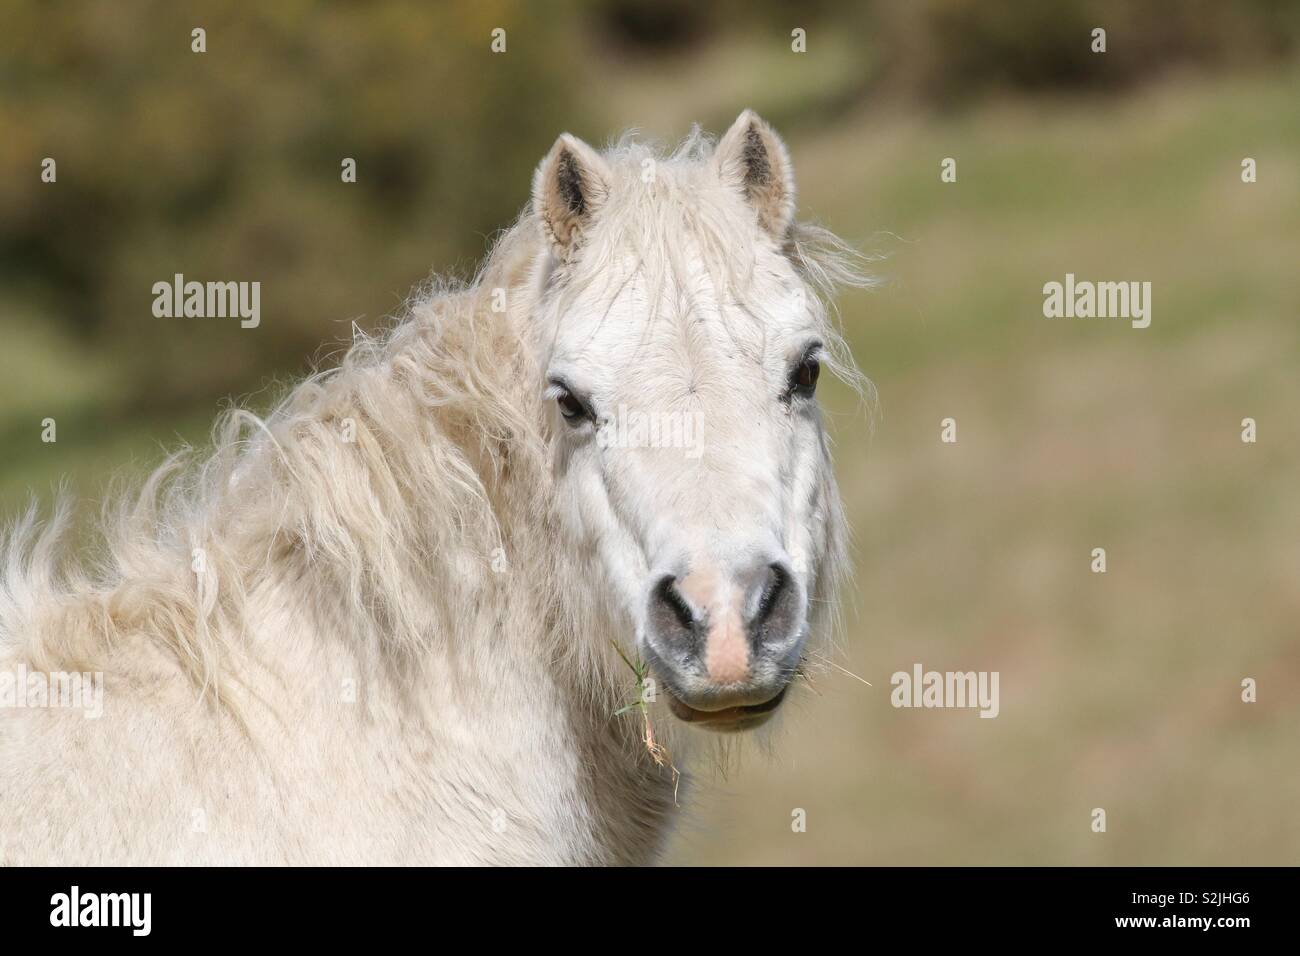 White horse Stock Photo